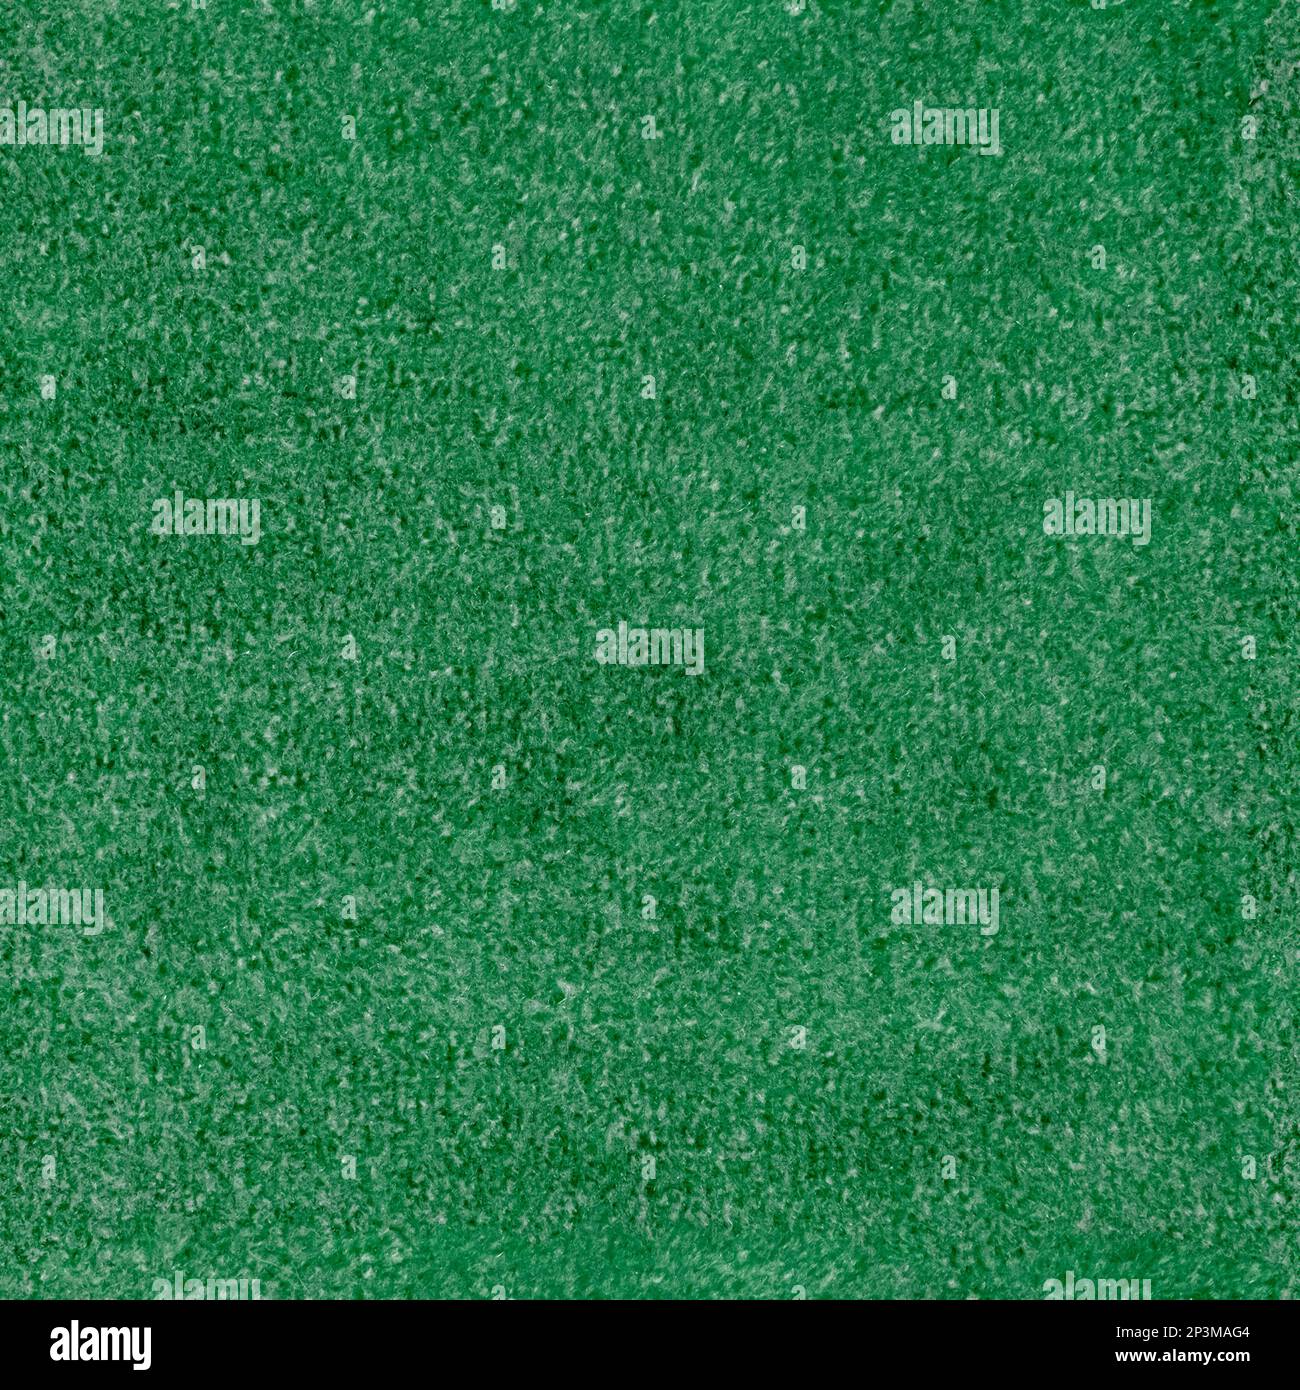 Carpet texture, seamless texture fabric carpit 4k Stock Photo - Alamy